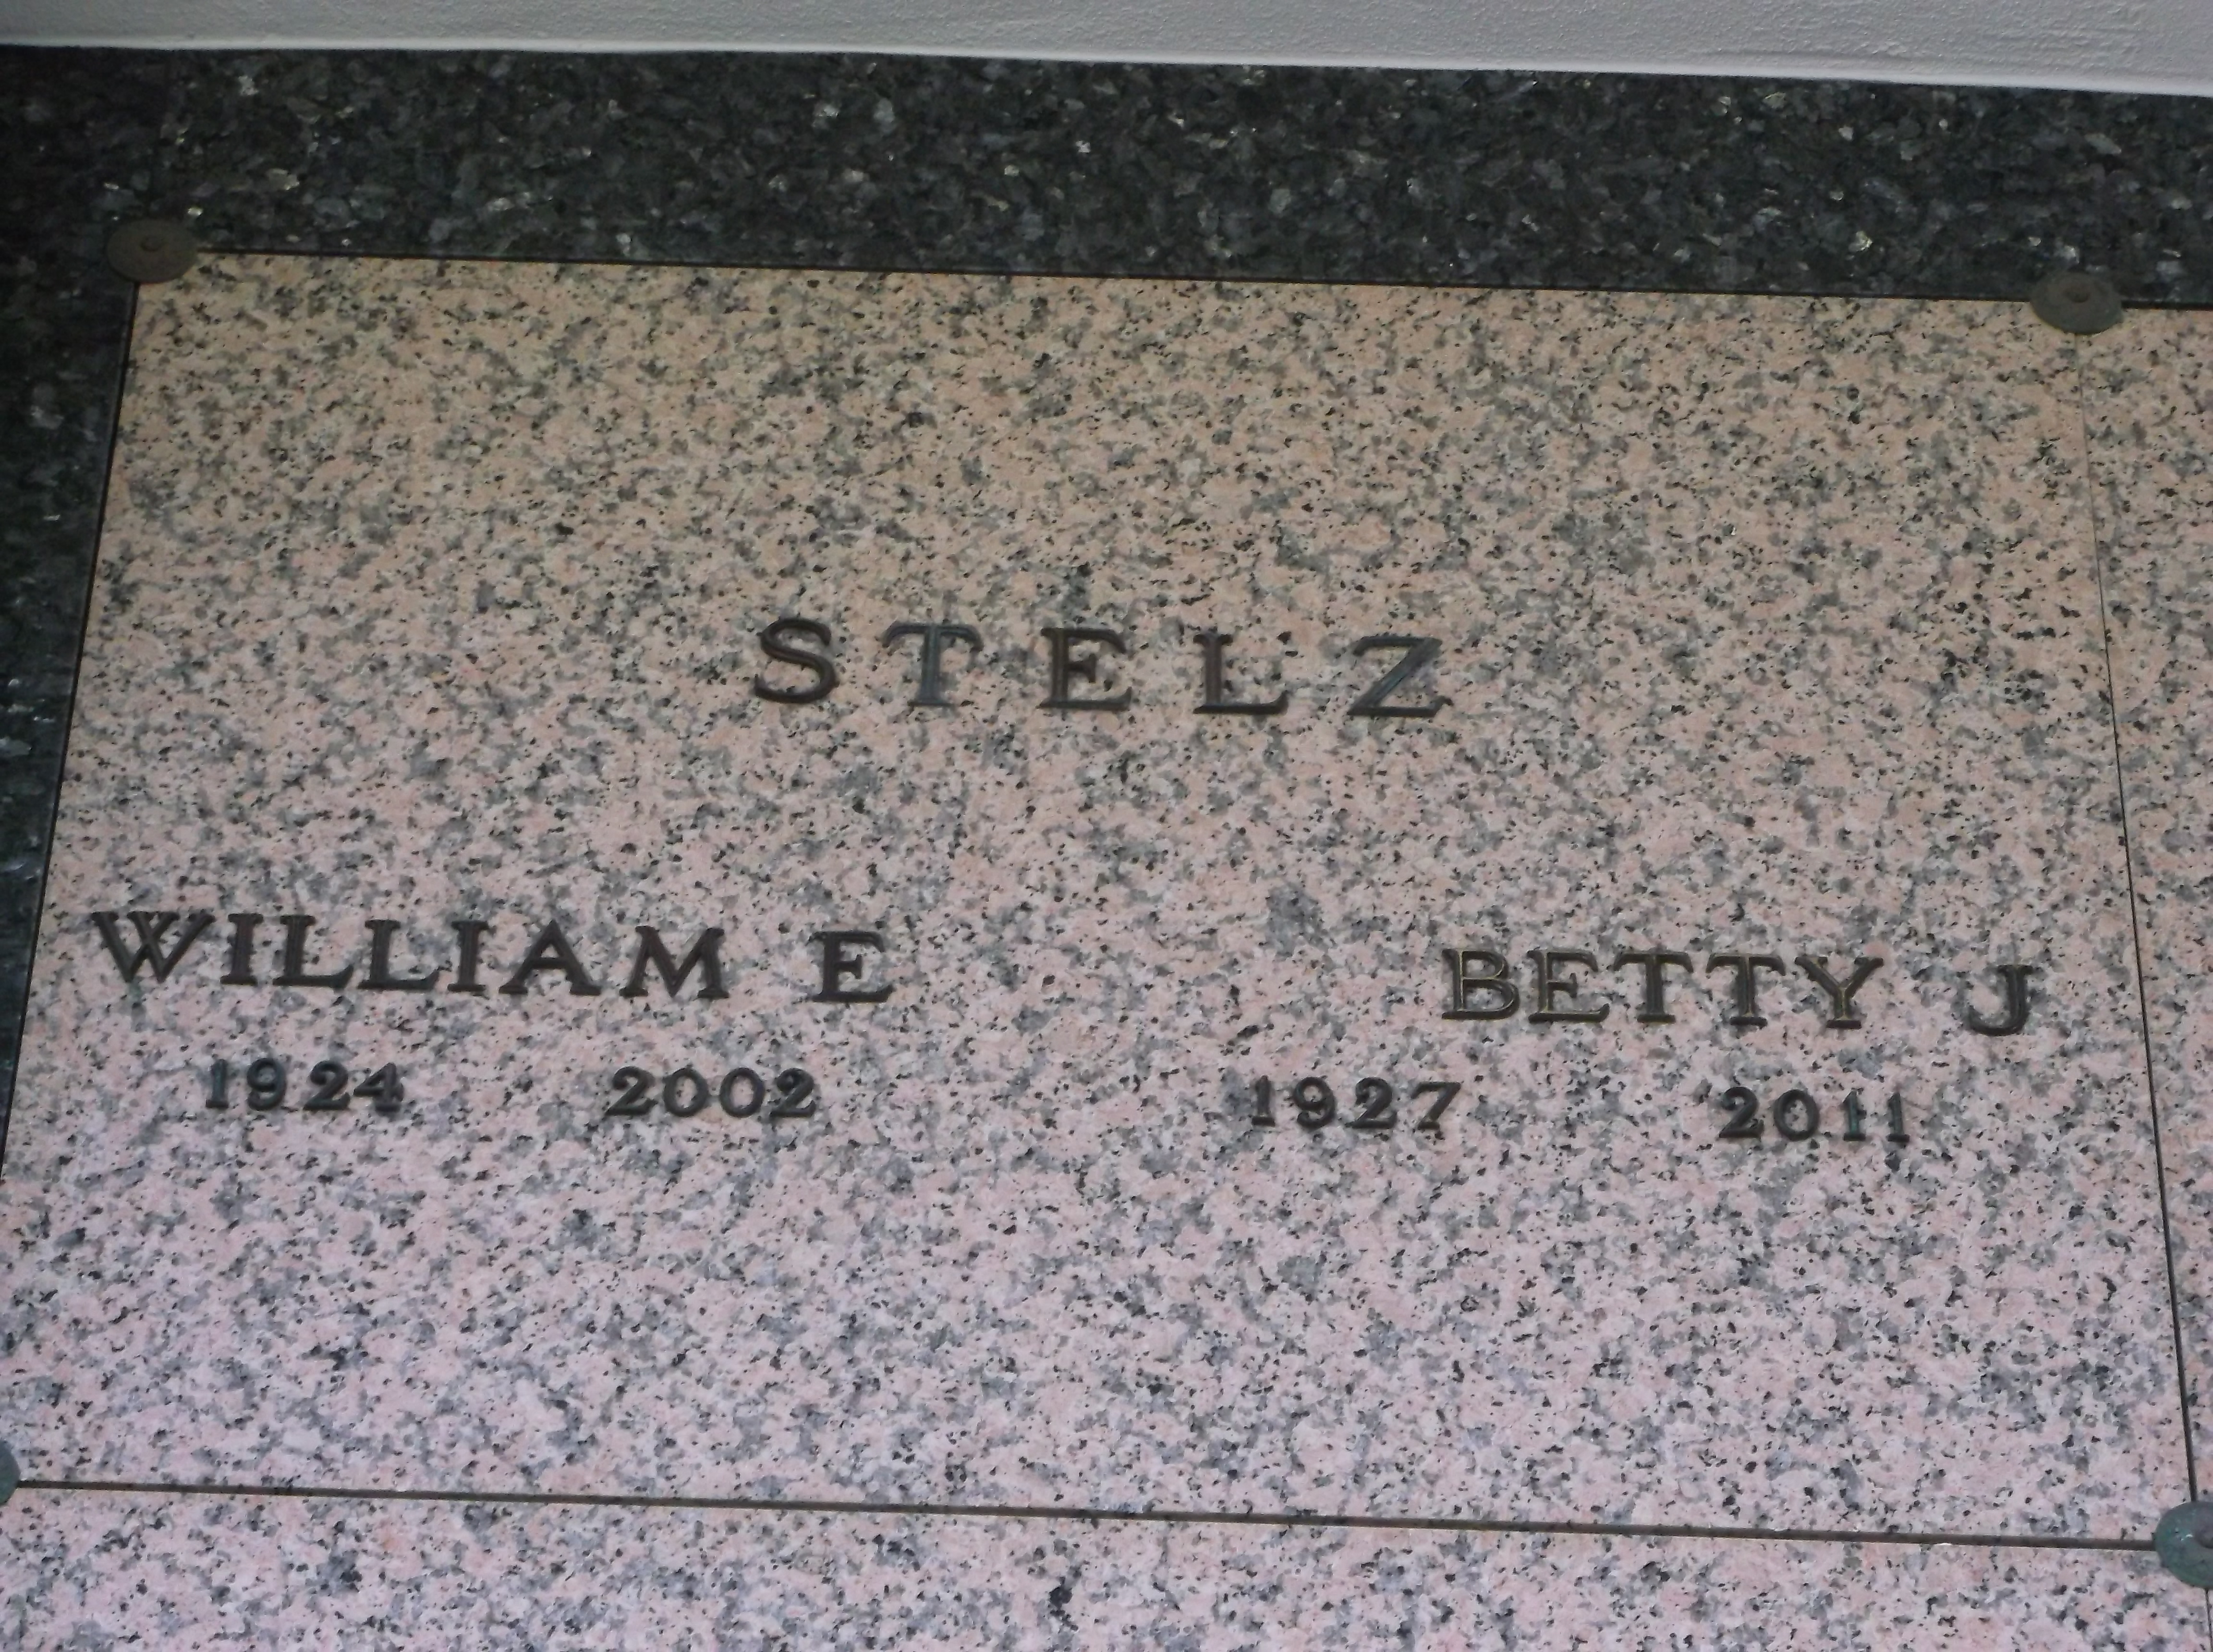 William E Stelz